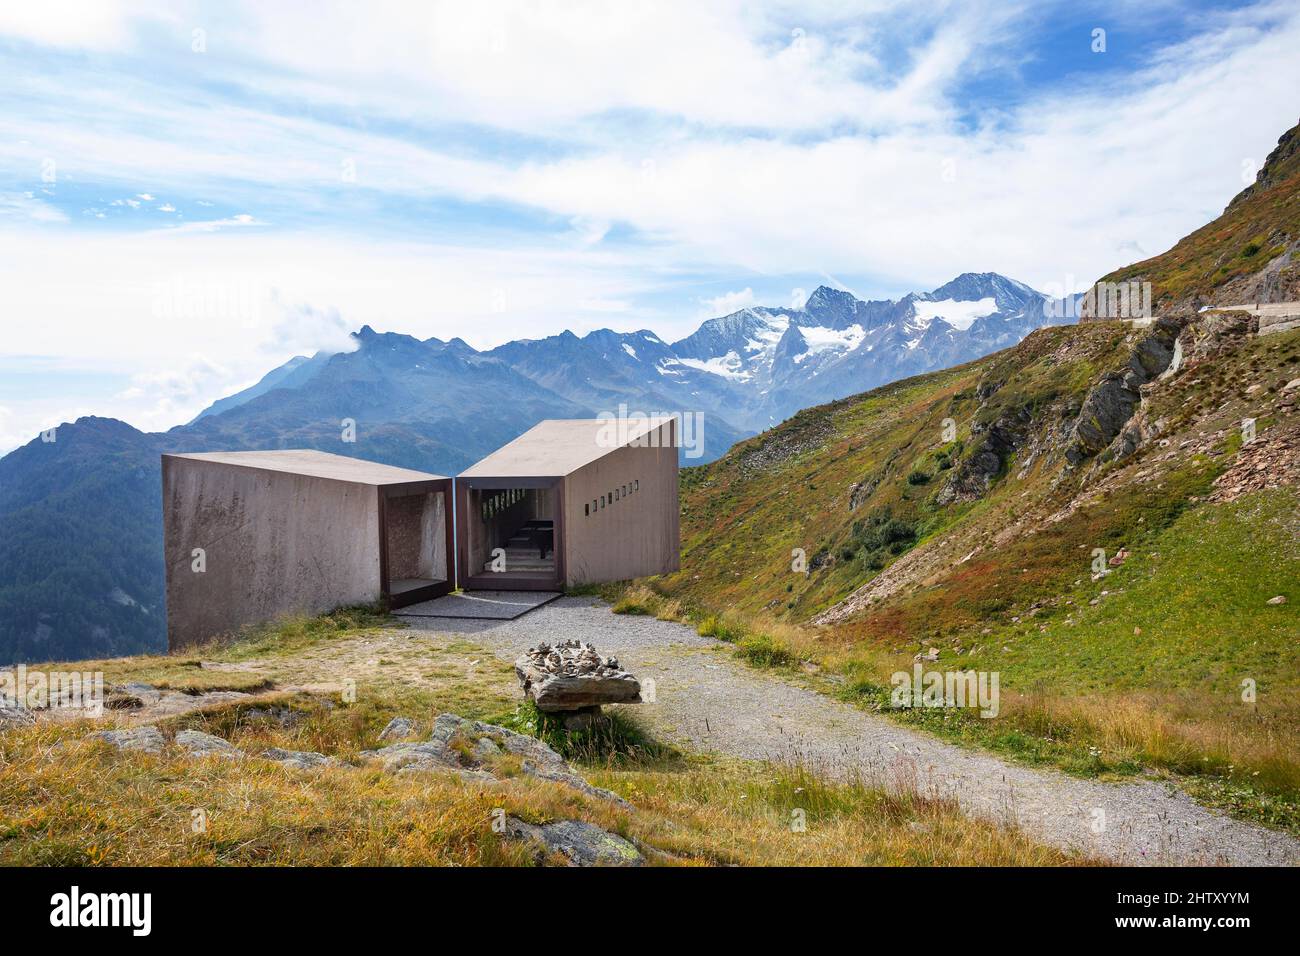 Le télescope InfoPoint sur la route haute alpine de Timmelsjoch, Passo del Rombo, passe la route entre le Tyrol et le Tyrol du Sud, les Alpes d'Oetztal, la vallée de Passeier Banque D'Images